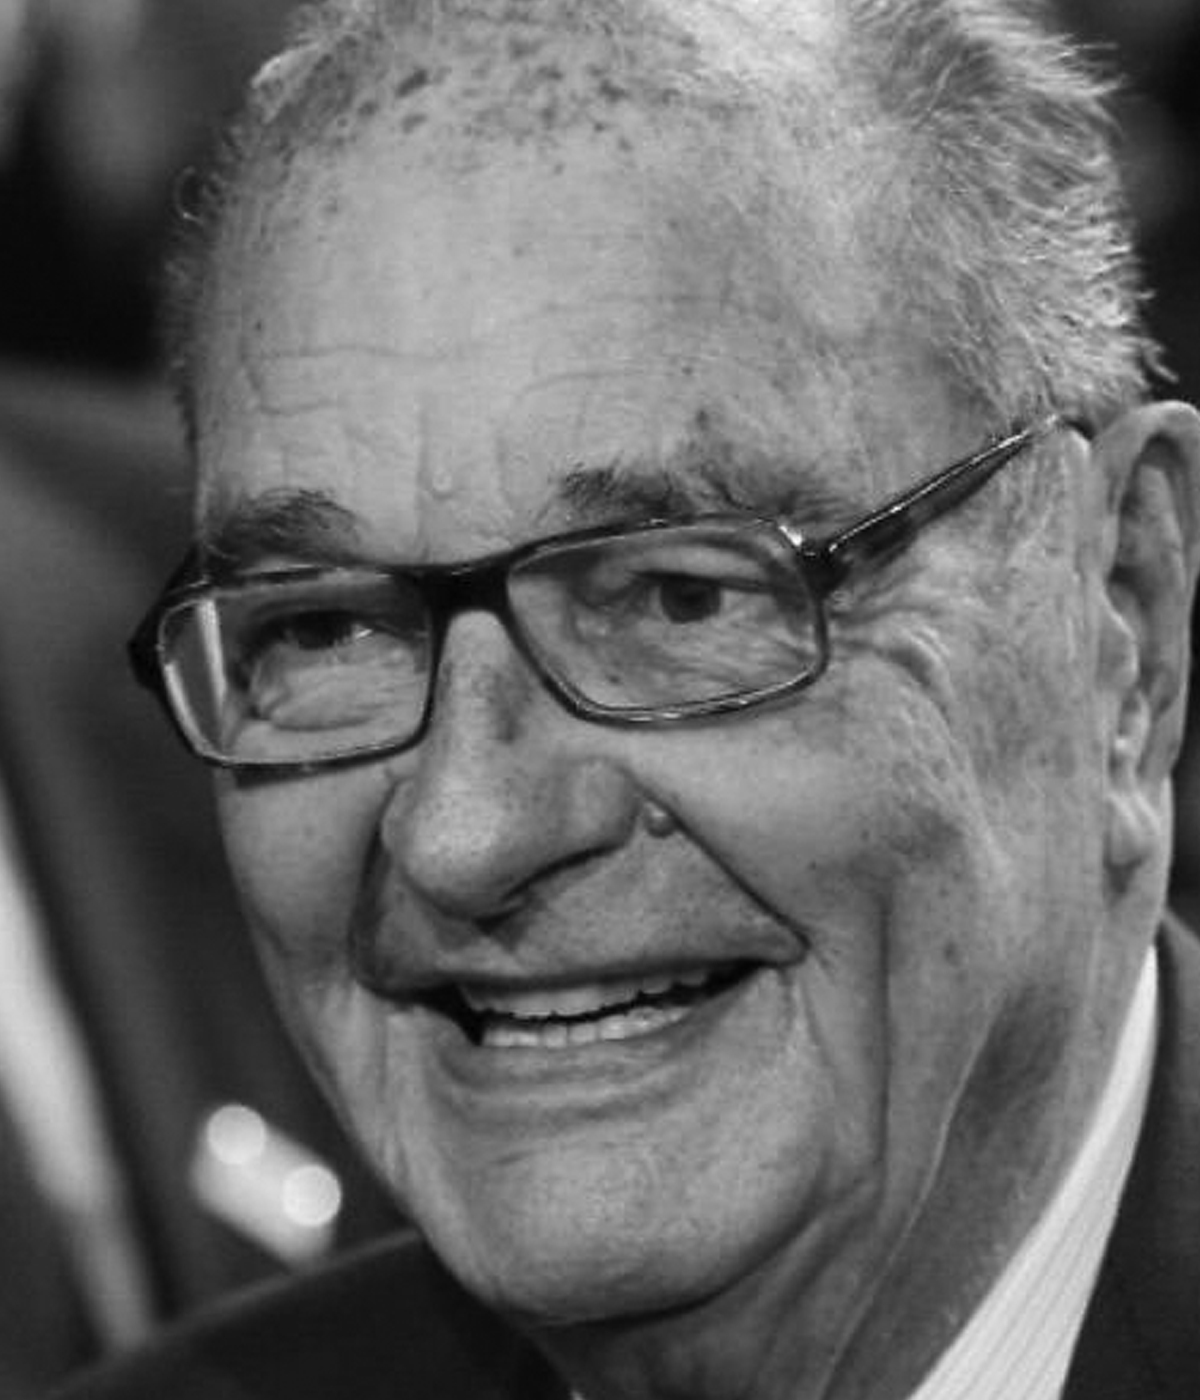 Doliu national! Fostul președinte a murit! Decesul fulgerător a șocat țara. Jacques Chirac avea 86 de ani